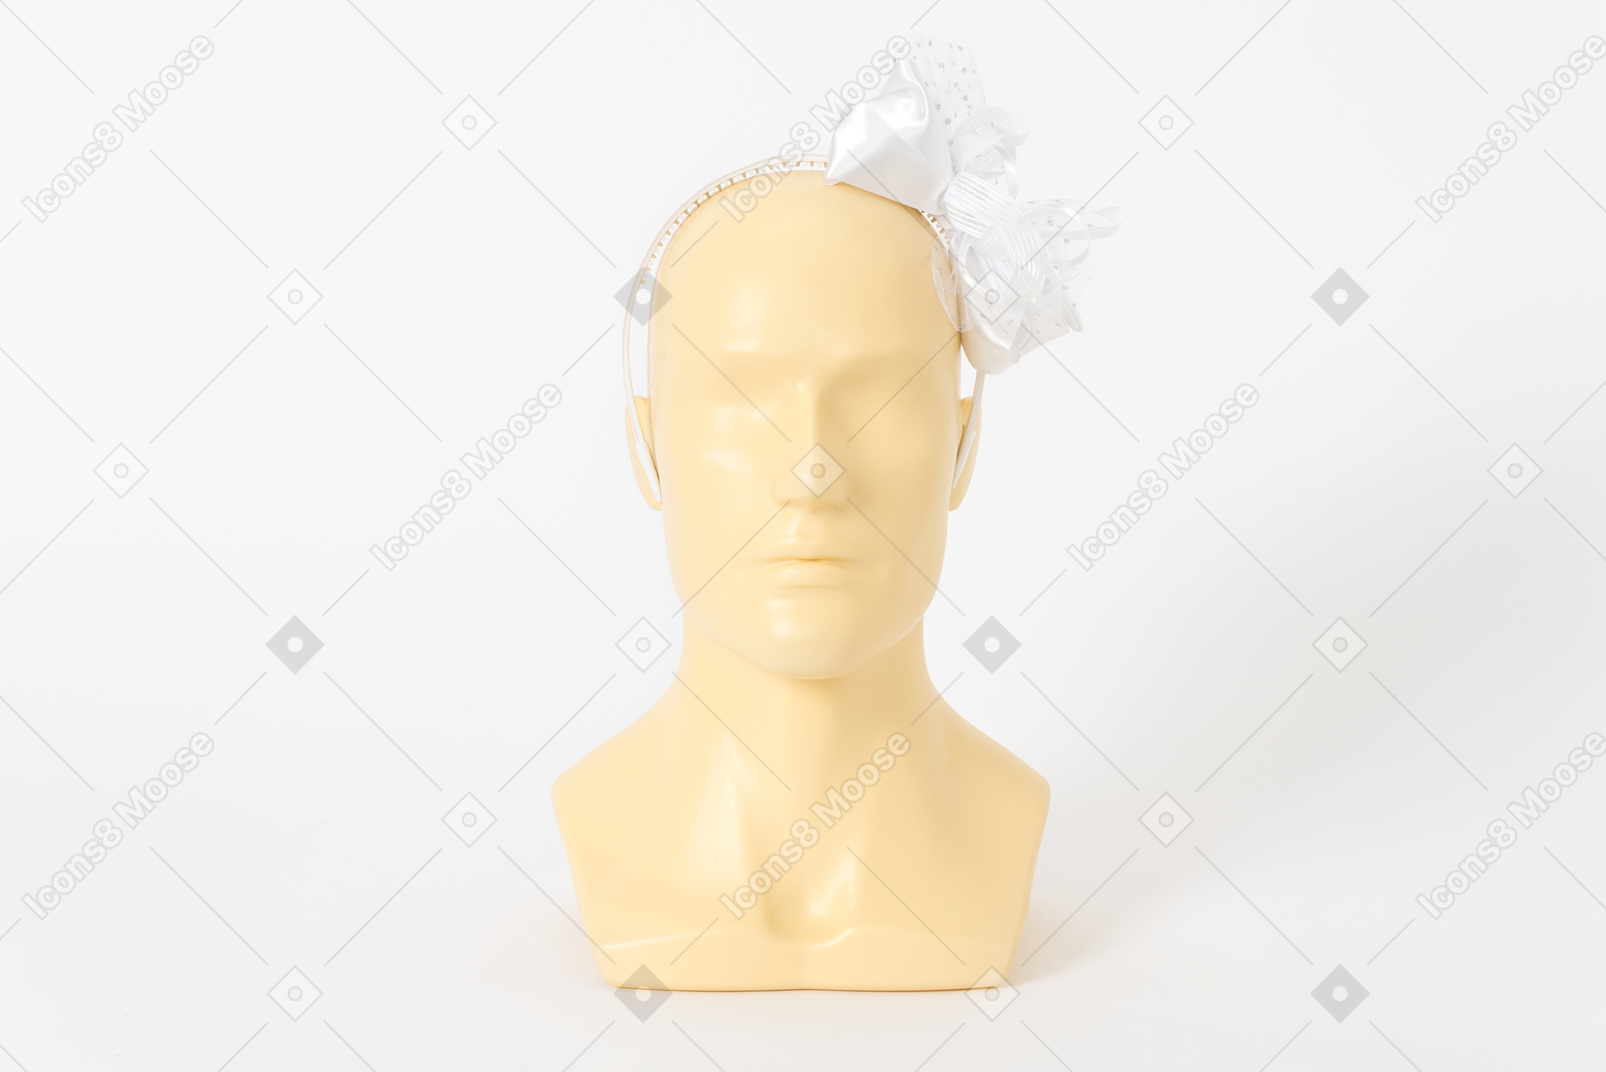 Белый обруч для волос с бантиком на голове манекенщицы